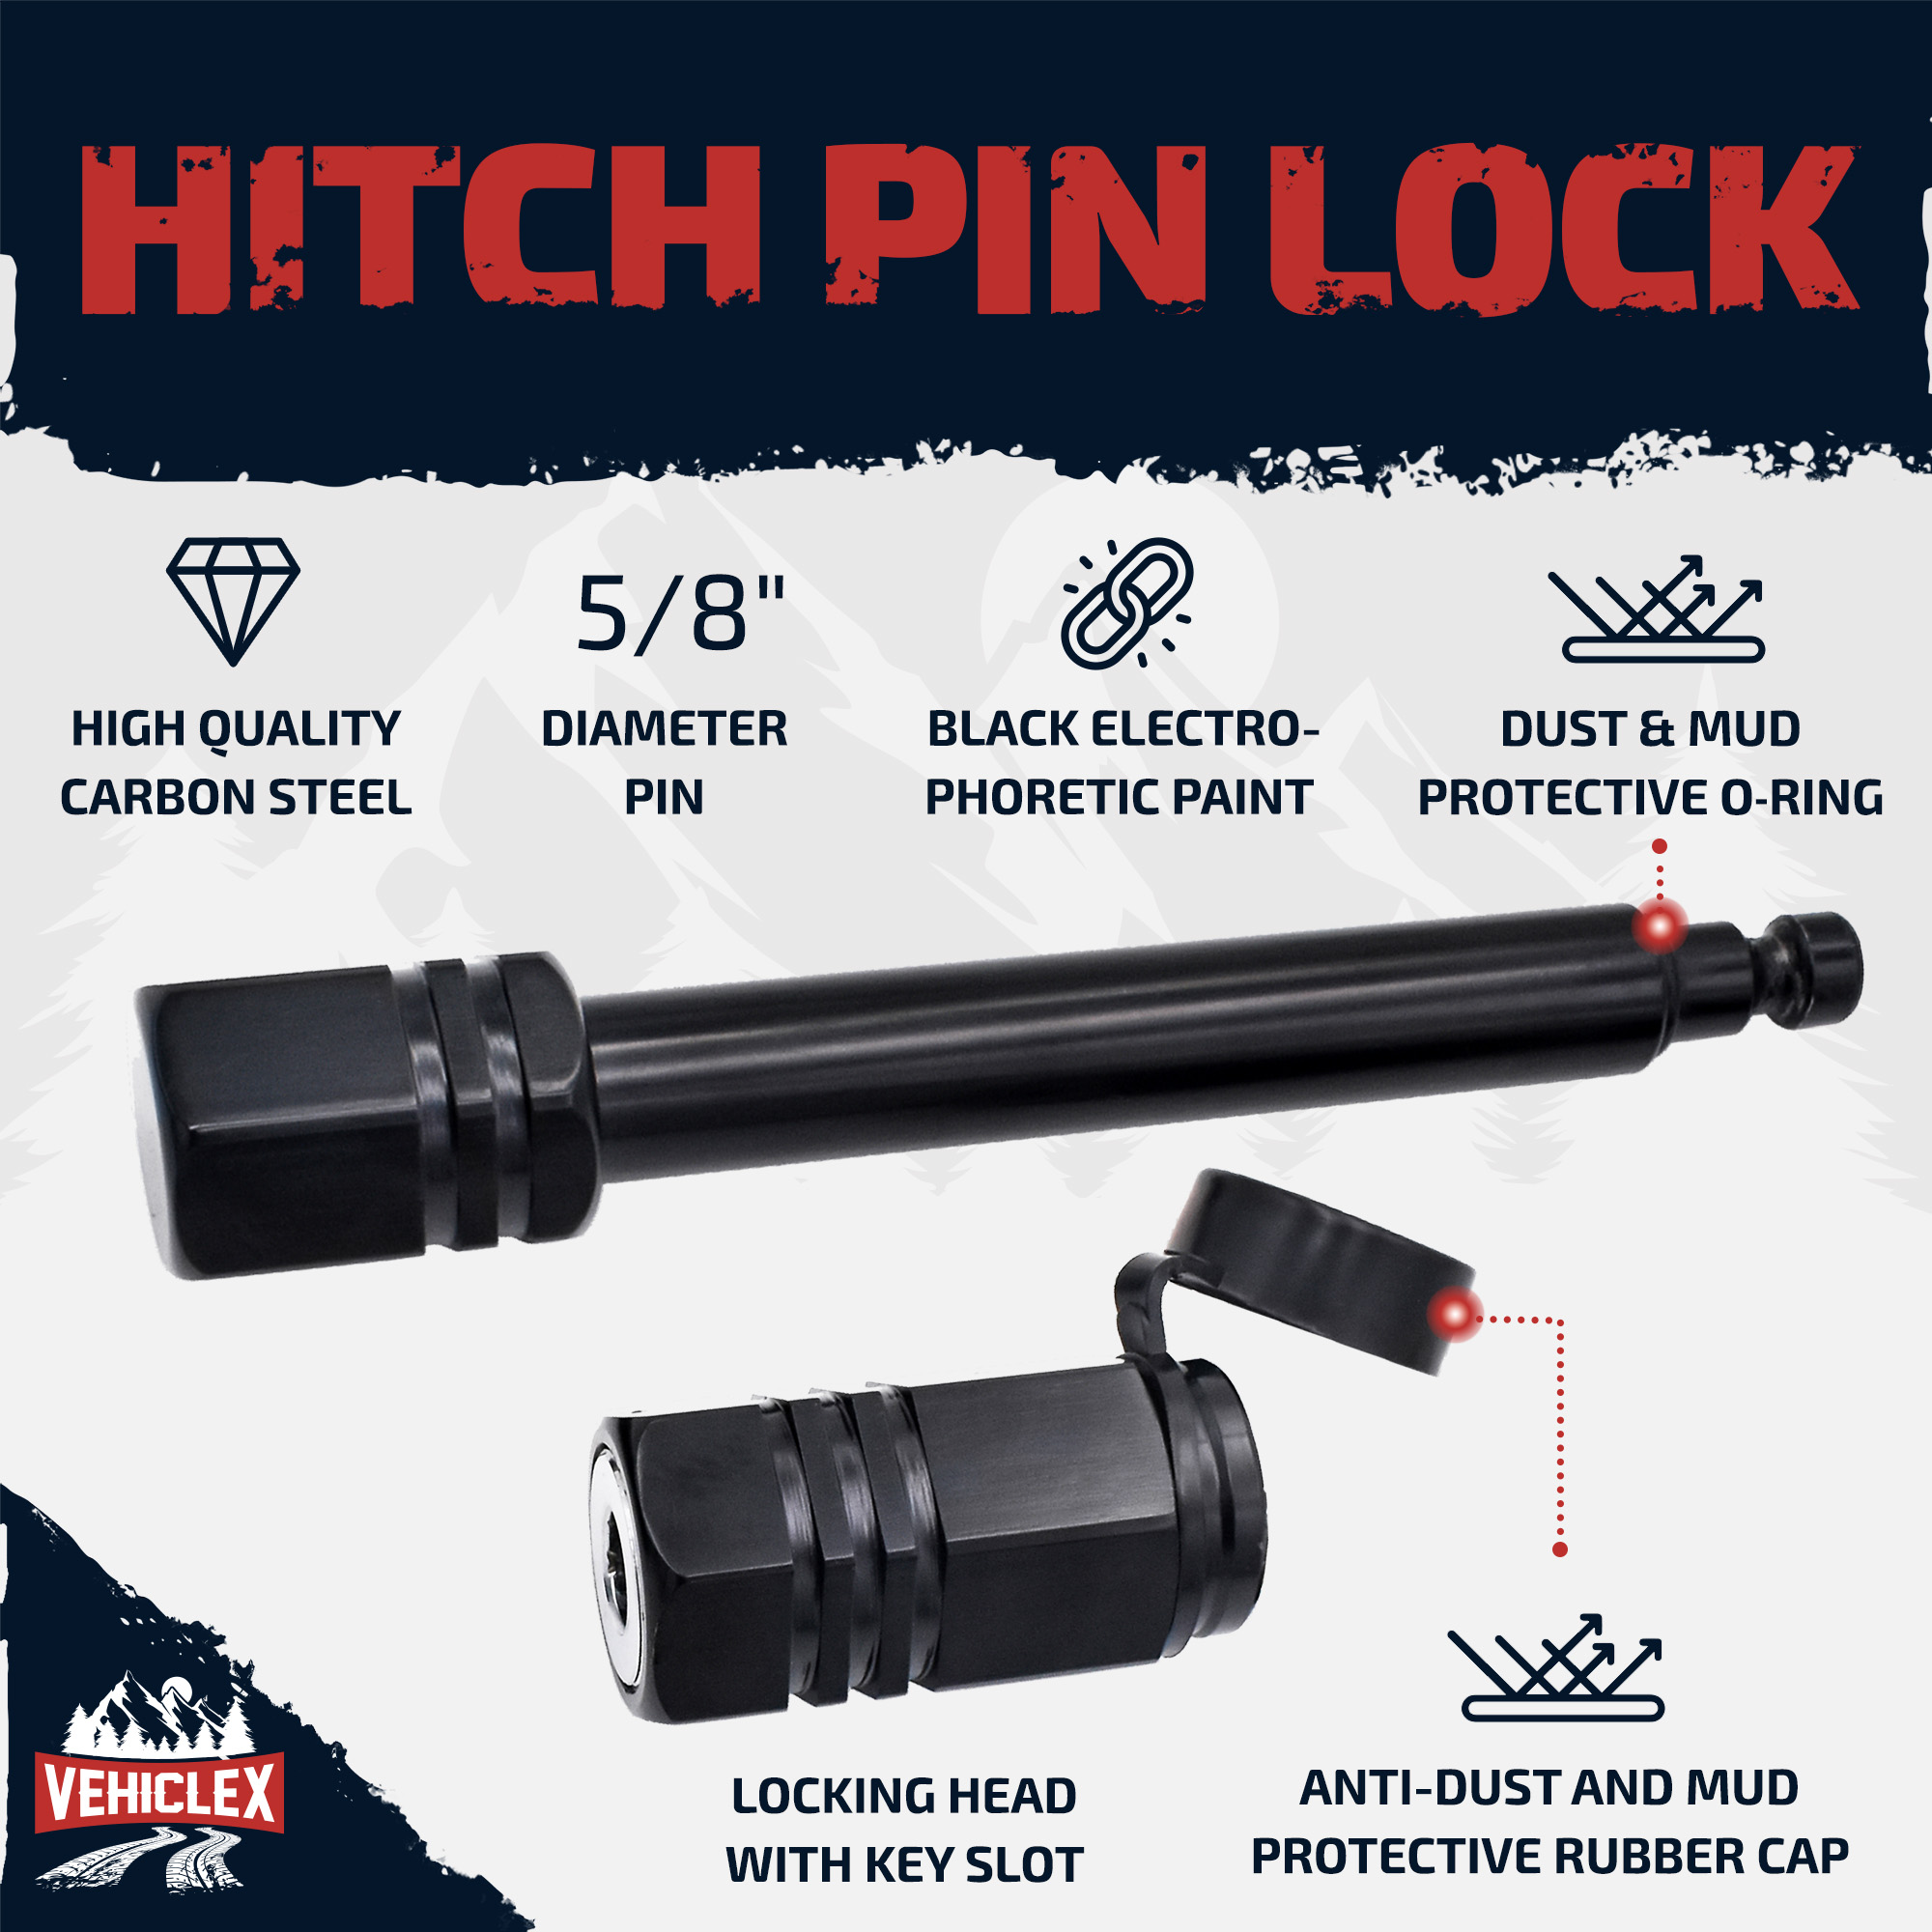 Hitch pin lock 2s